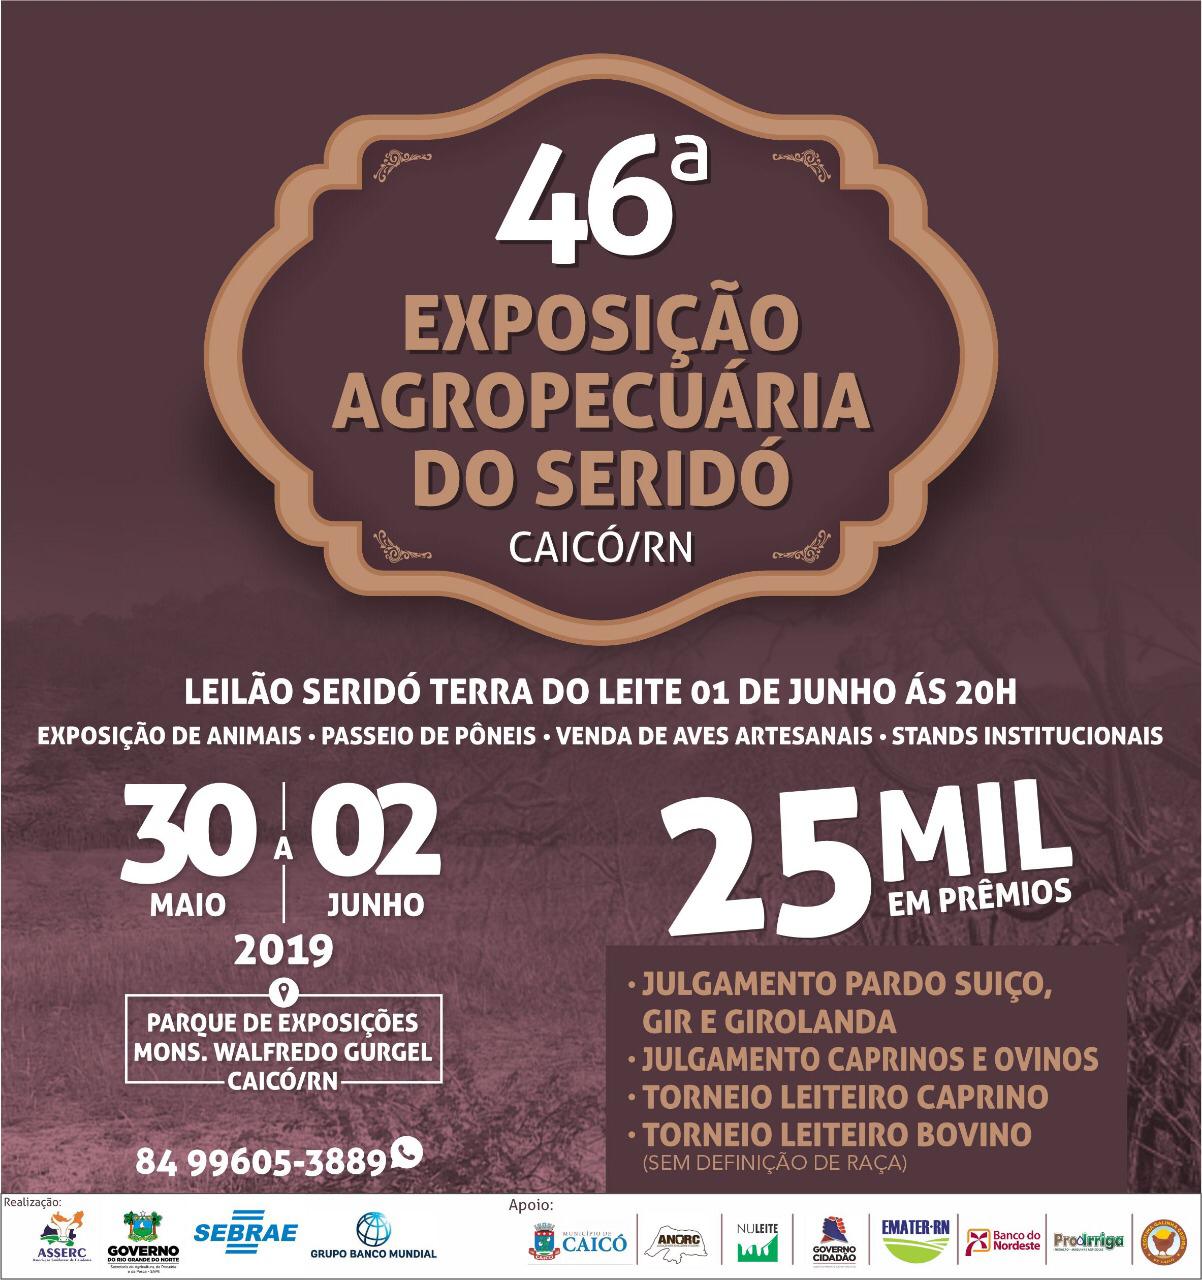 ExpoCaicó 2019: 46ª Exposição Agropecuária do Seridó começa nesta quinta